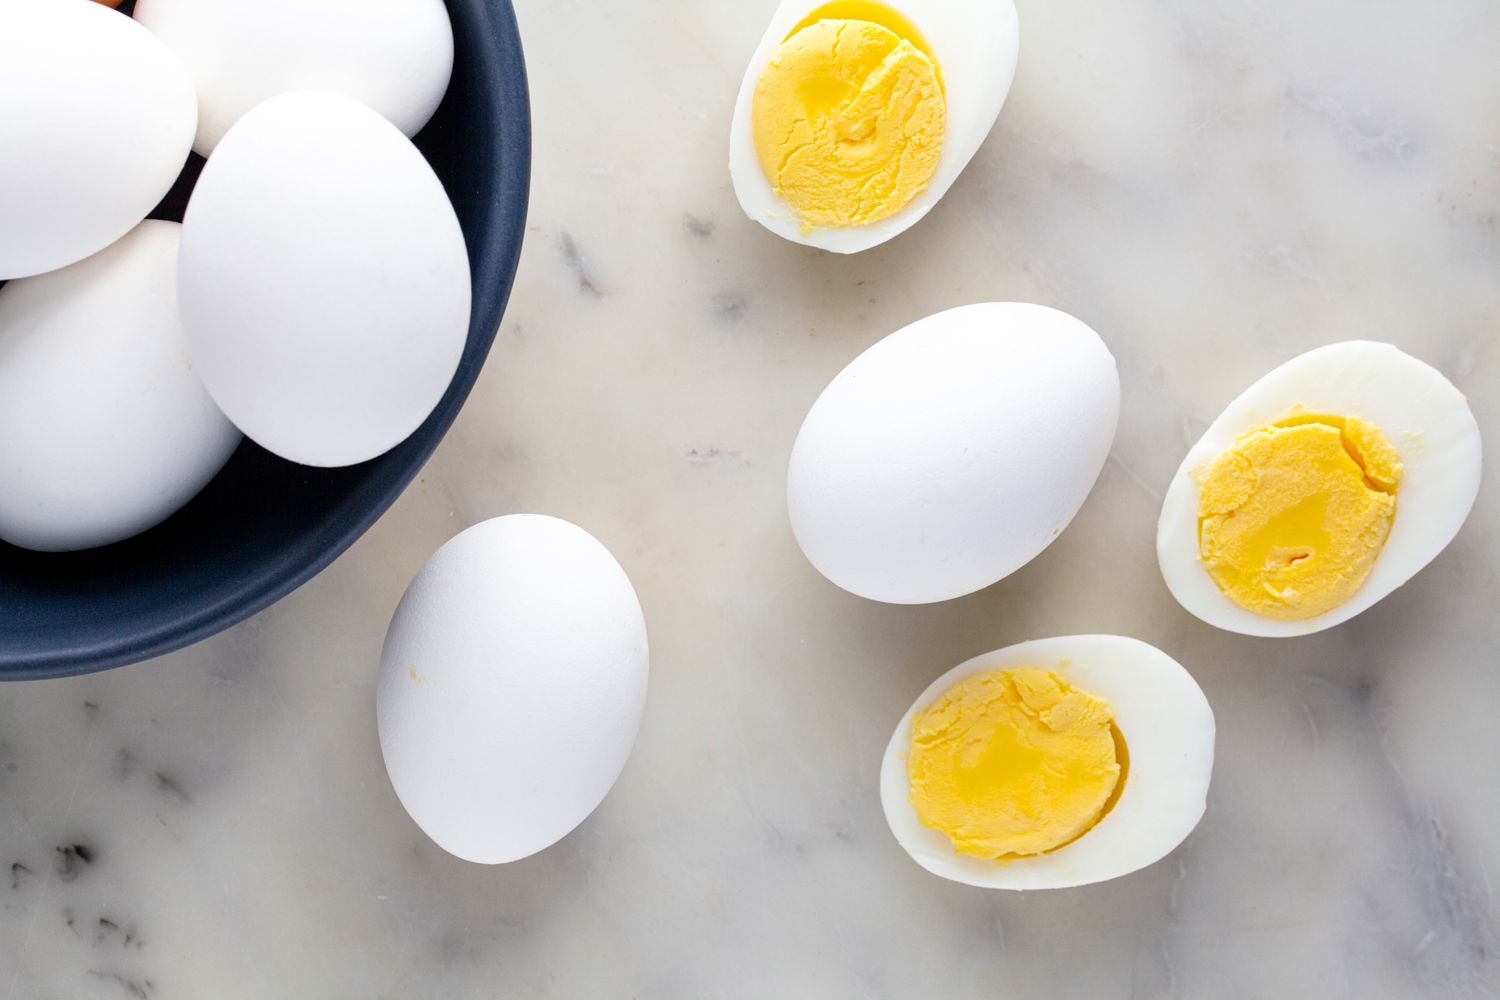 Yumurta lezzetli ve besleyici bir gıdadır. Ancak bu gıdayı fazla ve bilinçsizce tüketmek çeşitli sağlık sorunlarına yol açar.